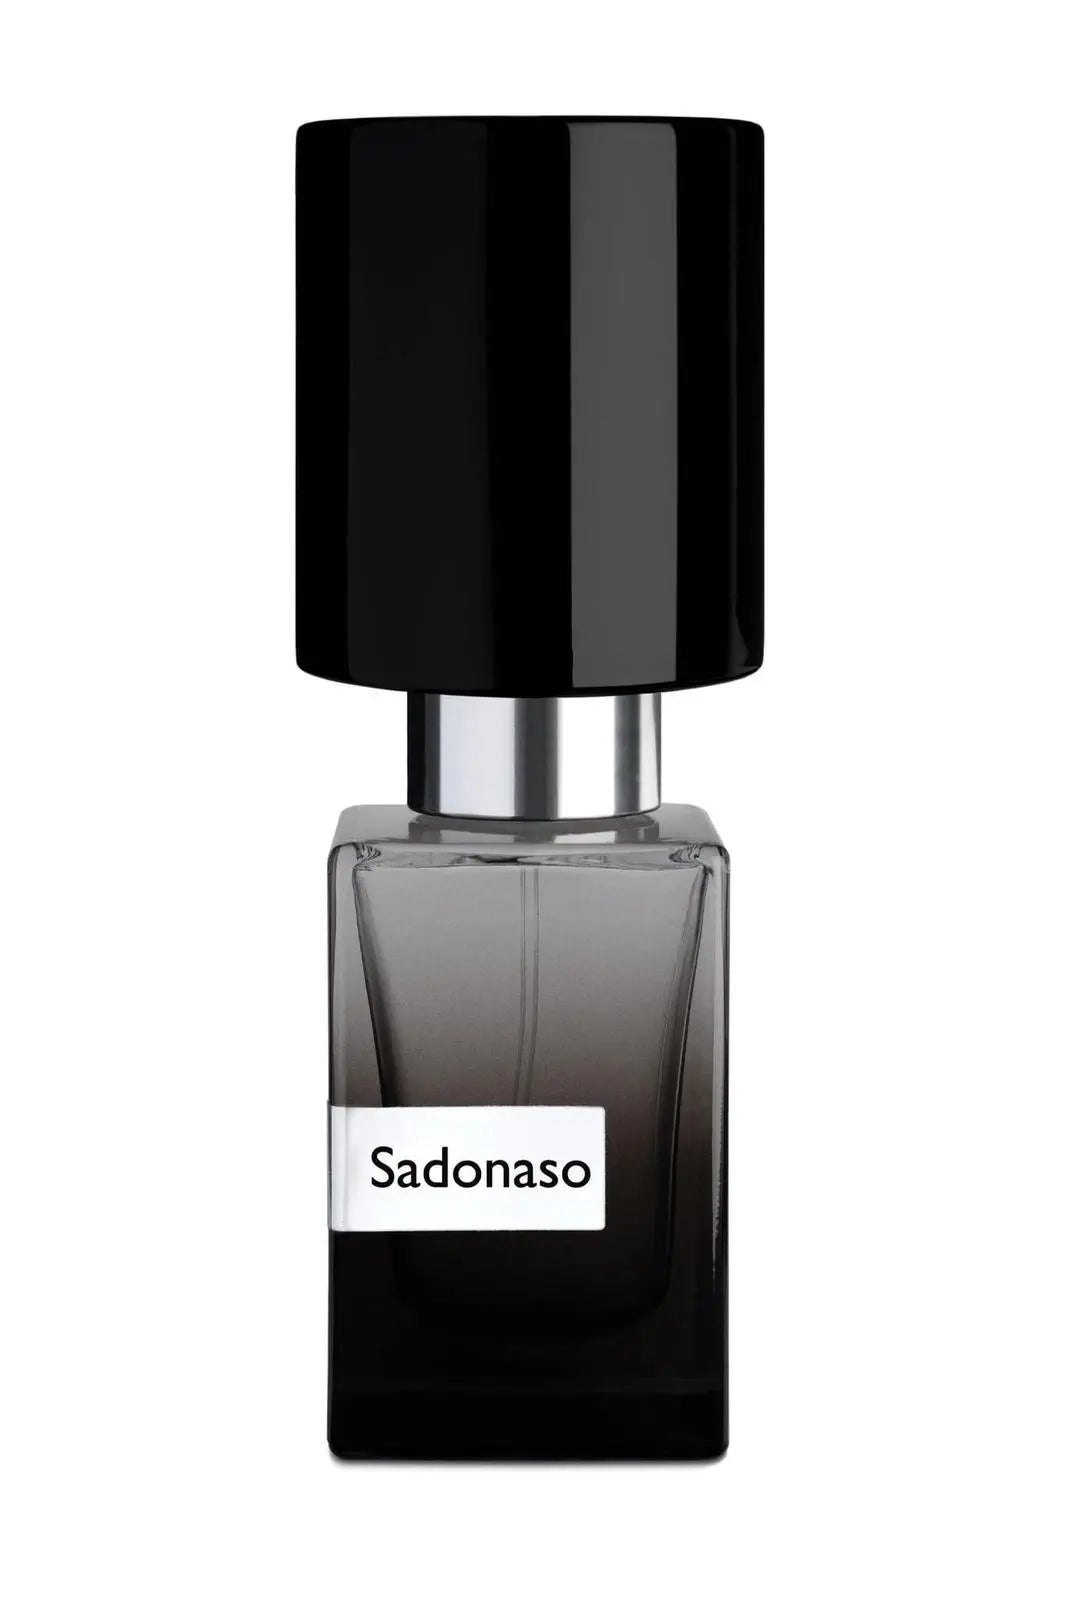 SADONASO Nasomatto perfume extract - 30 ml Limited edition (Cap)